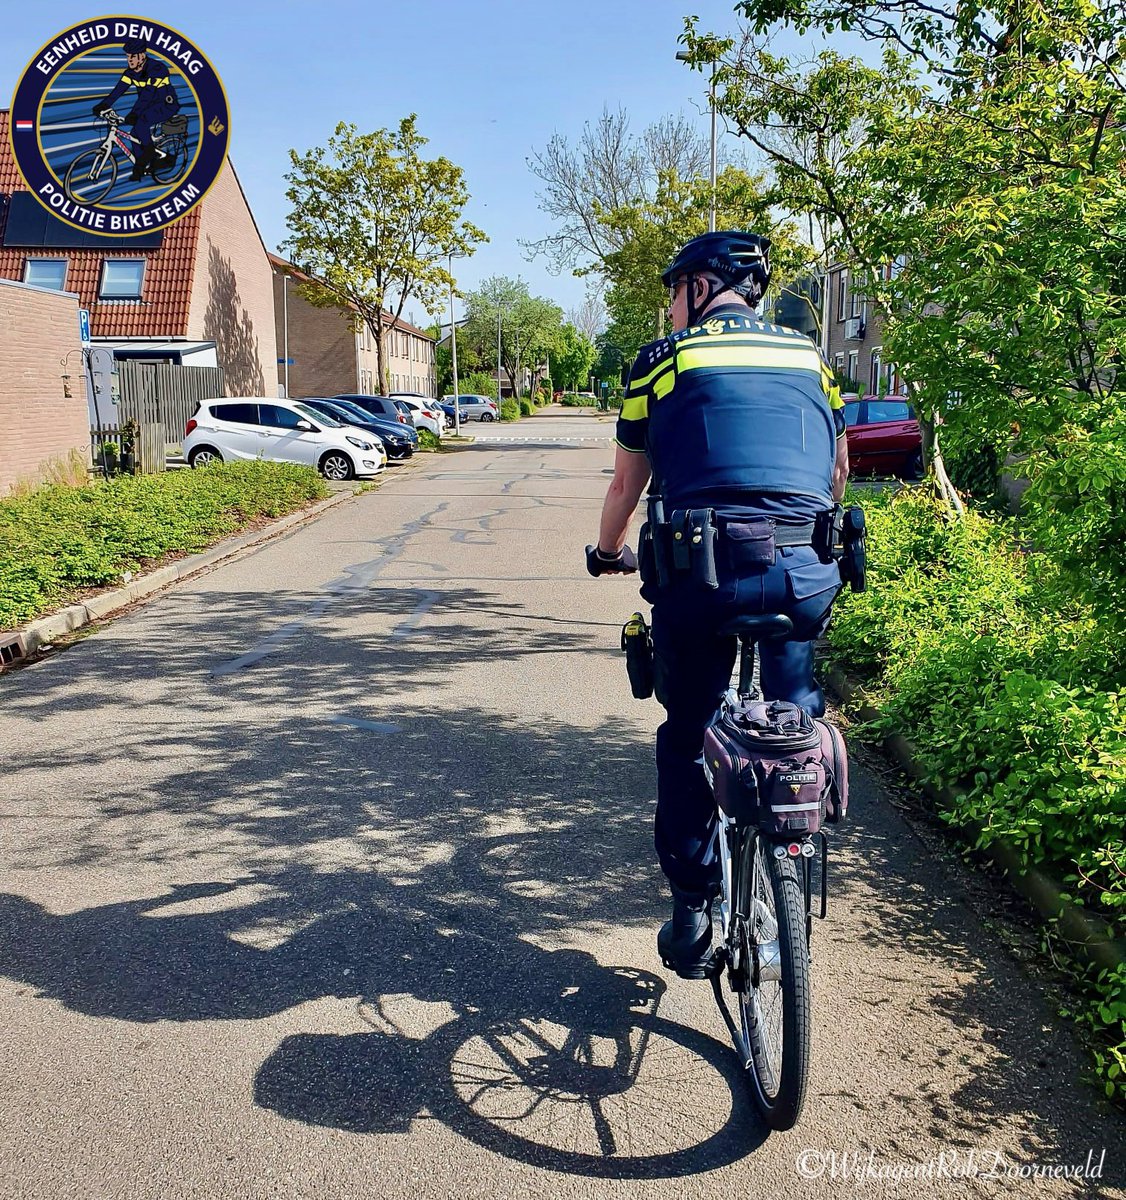 De voordelen van surveilleren op de fiets:
Zichtbaar, Aanspreekbaar en Herkenbaar 🚲😃👍🏻
#politie #zoetermeer #deleyens #wijkagent #bikepatrol